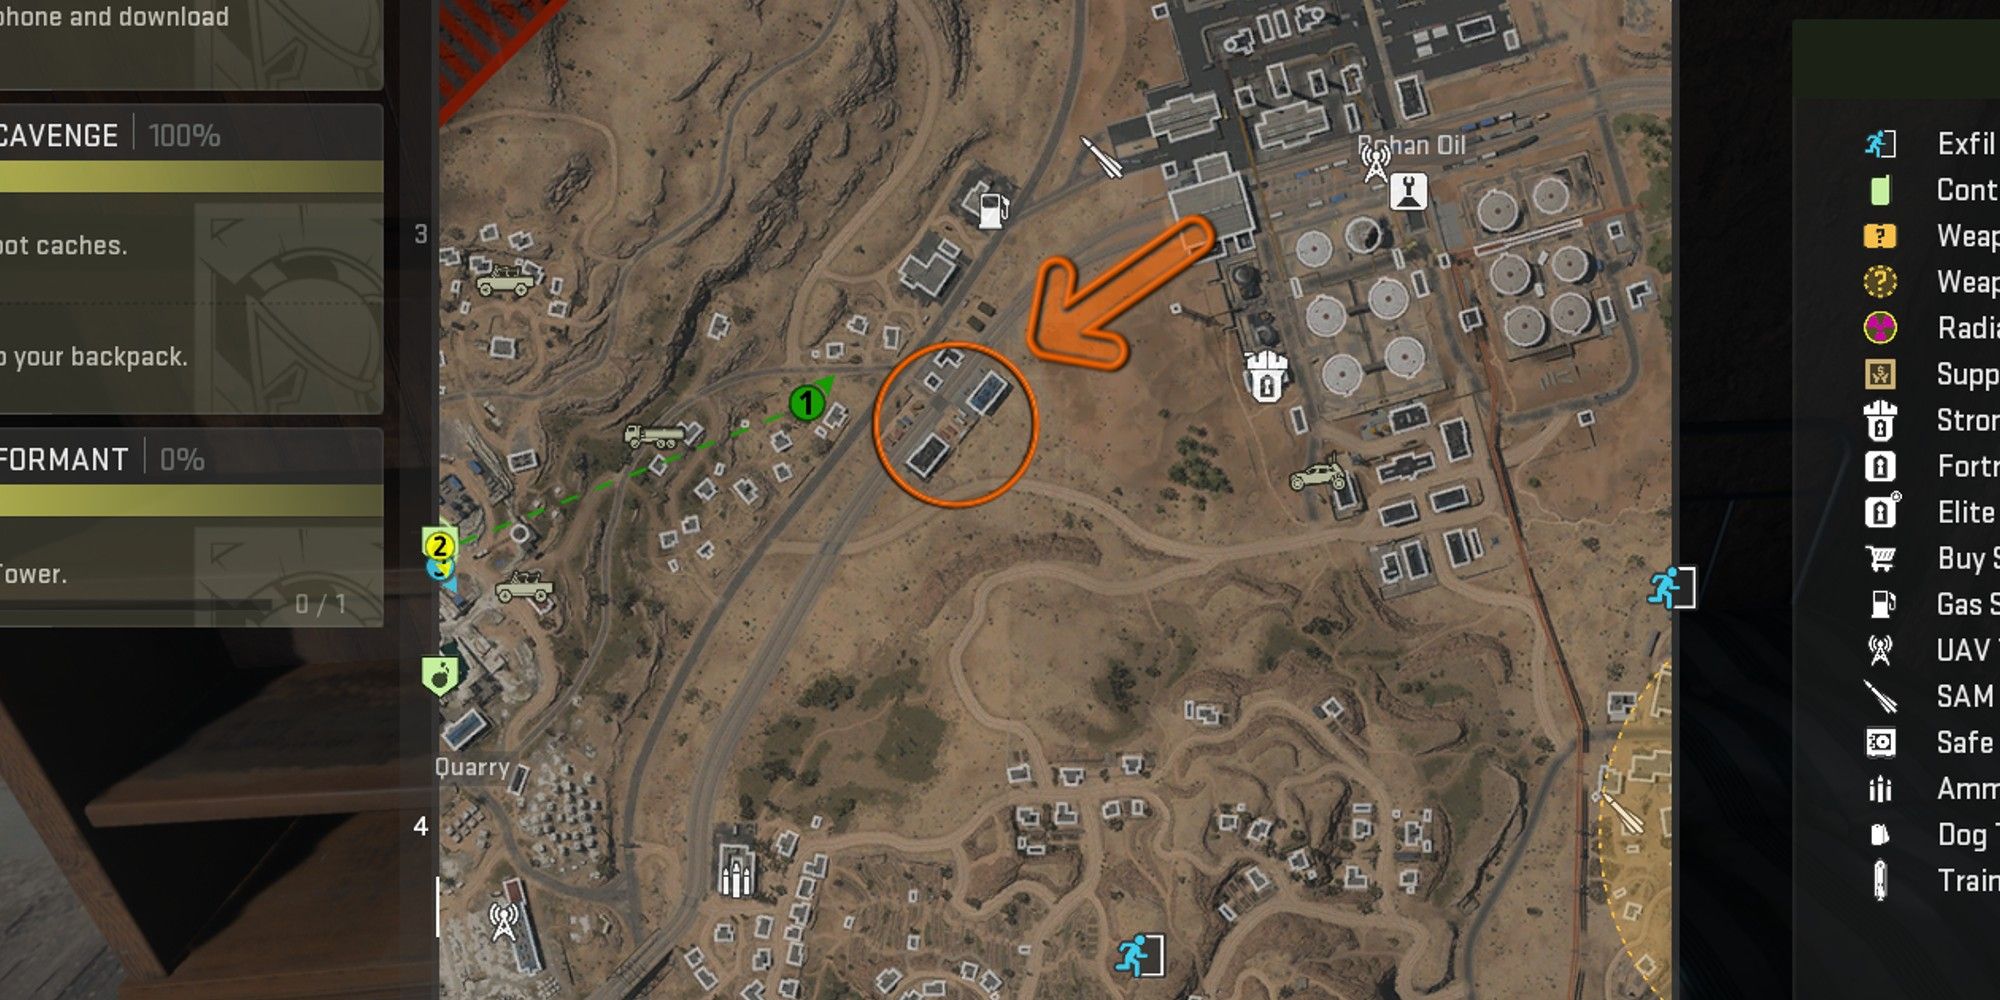 Warzone DMZ Rohan Oil Dead Drop Location on map.